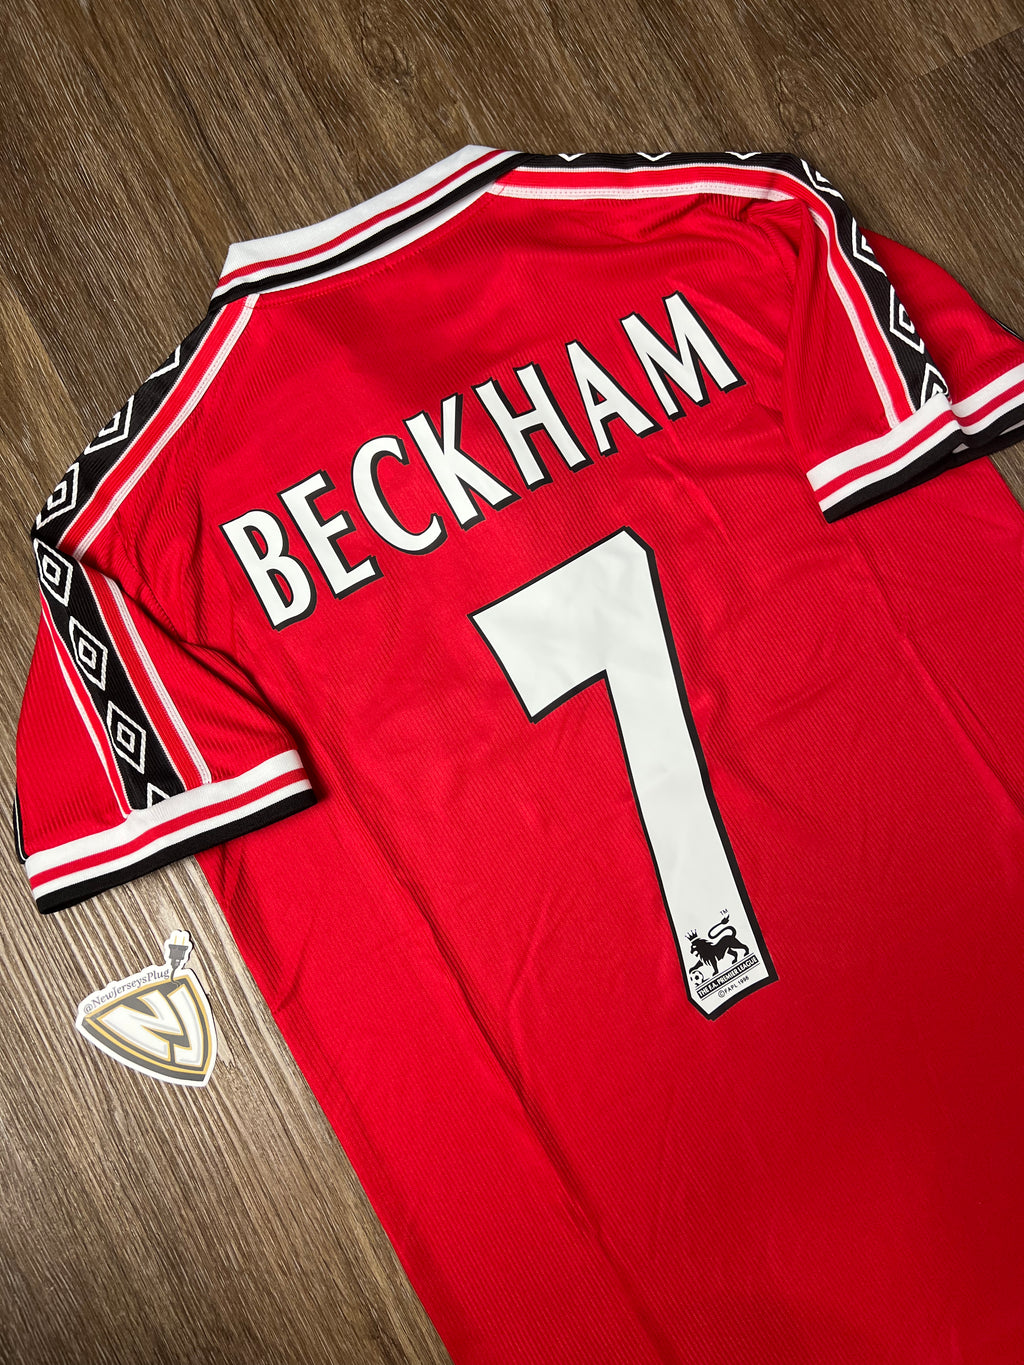 98/99 Manchester United David Beckham Home Jersey